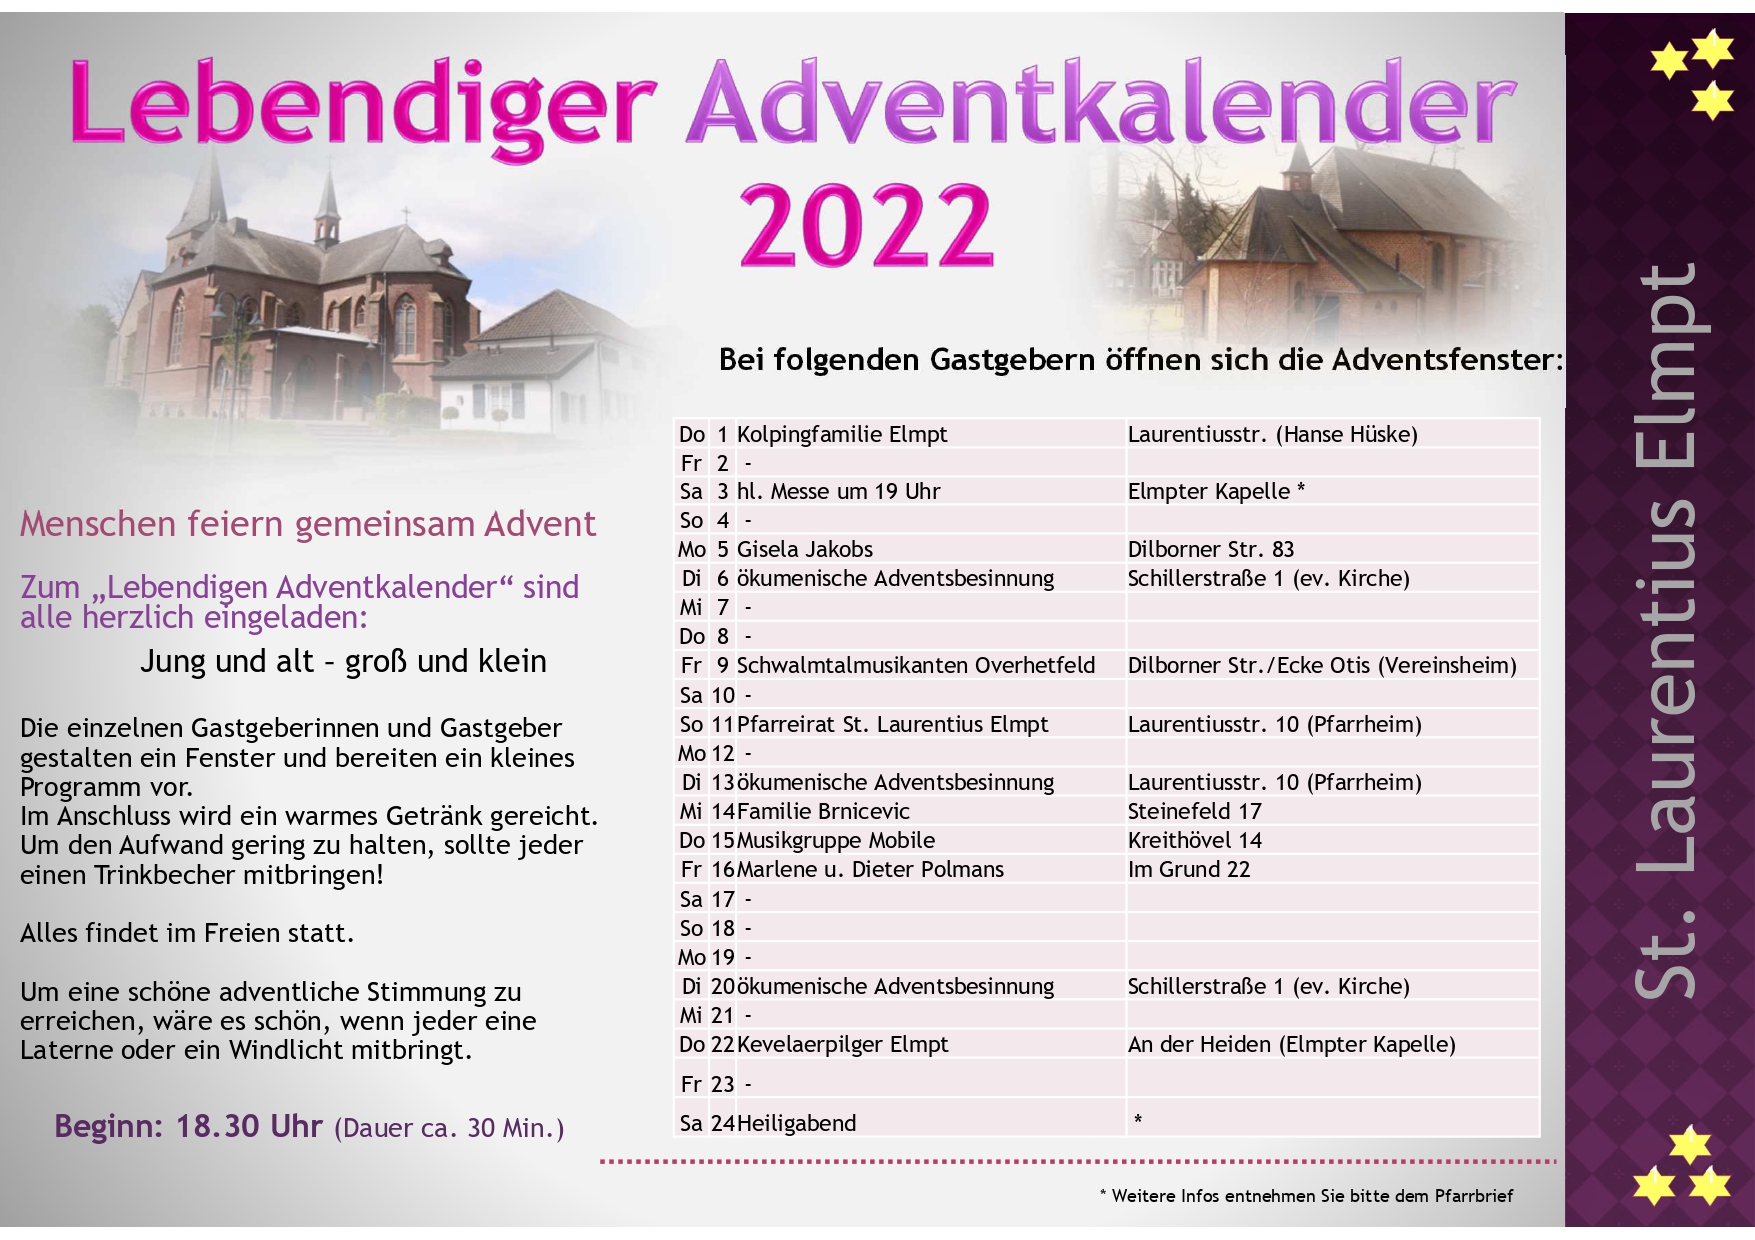 2022 Plakat Lebendiger Adventskalender.pptx [Schreibgeschützt]_pages-to-jpg-0001 (c) Pfarre